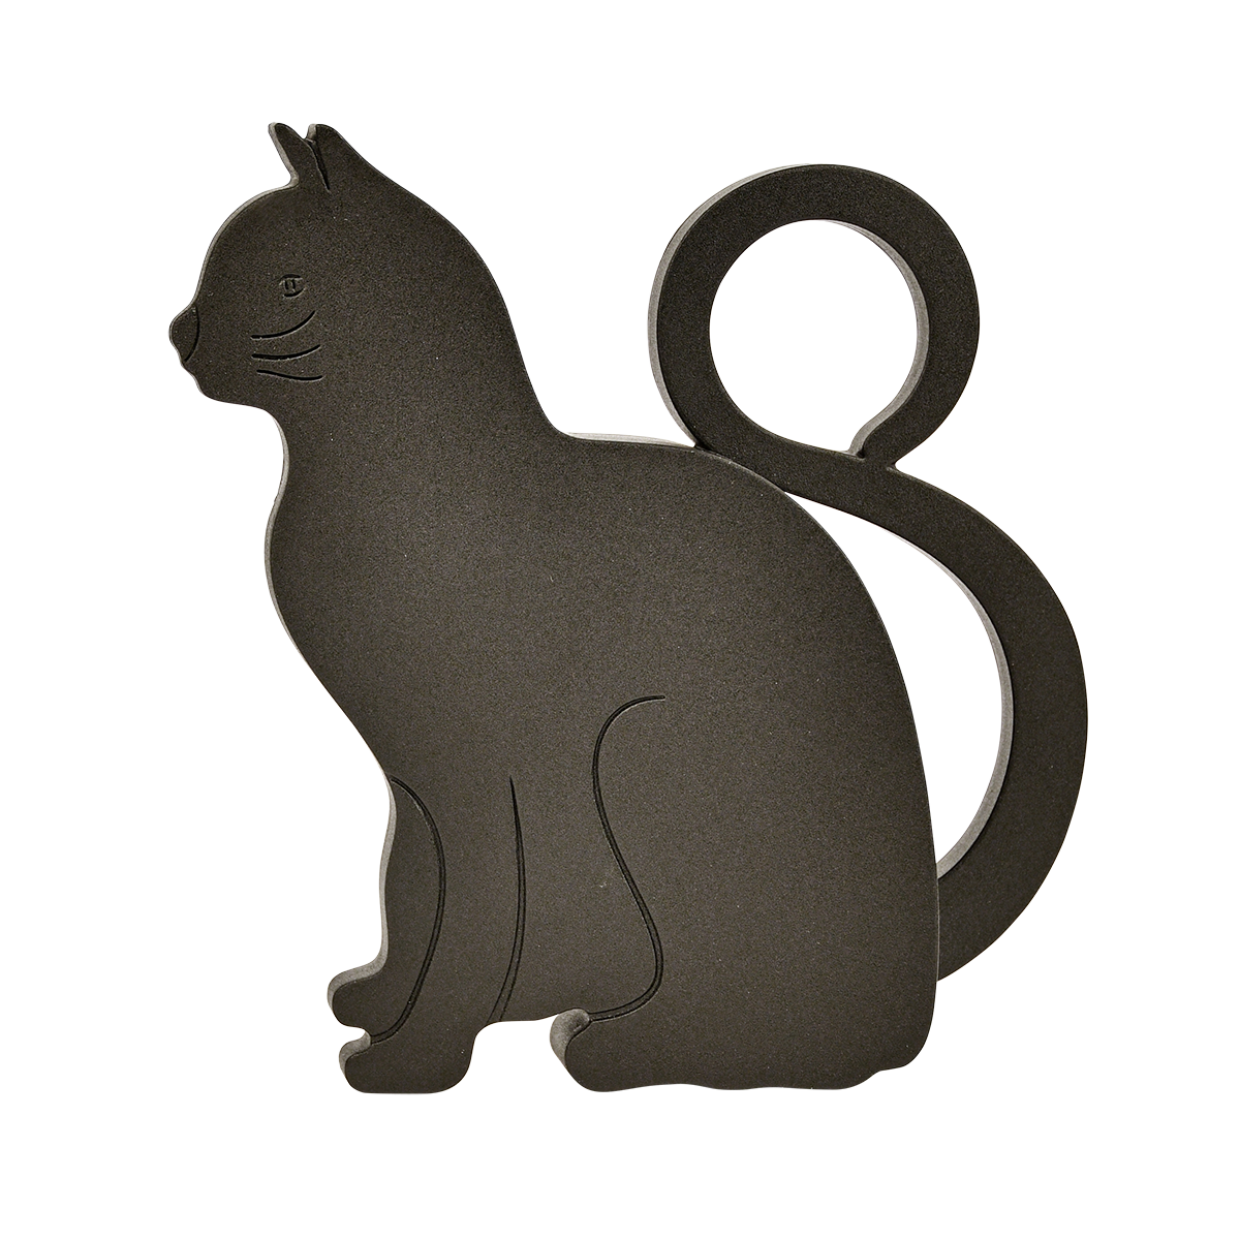 Стопор дверной "Кошка" из пластика RB229 Esschert Design, 11 x 9.4 x 2.5 см